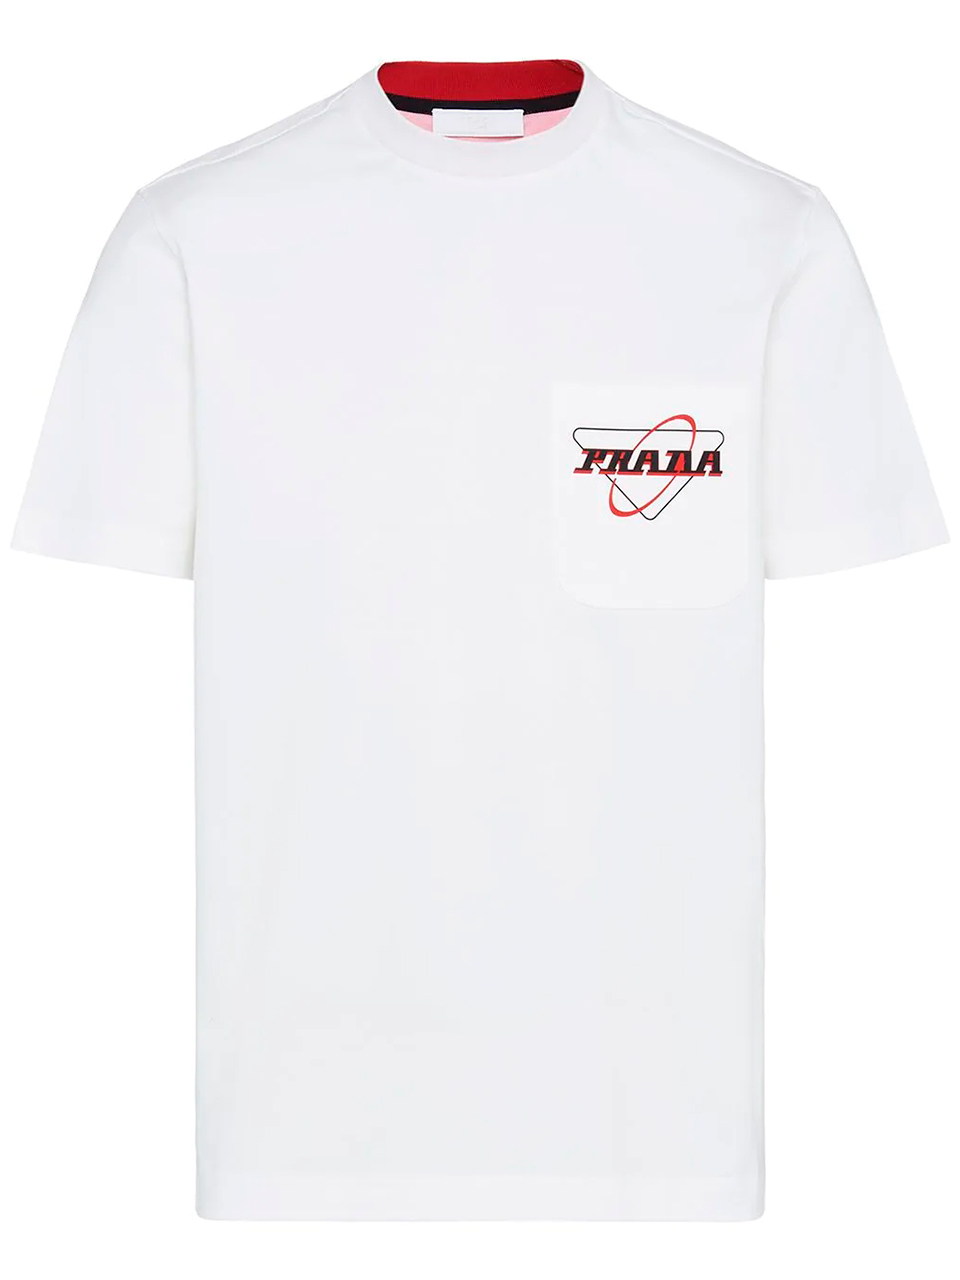 Imagem de: Camiseta Prada Branca com Logo